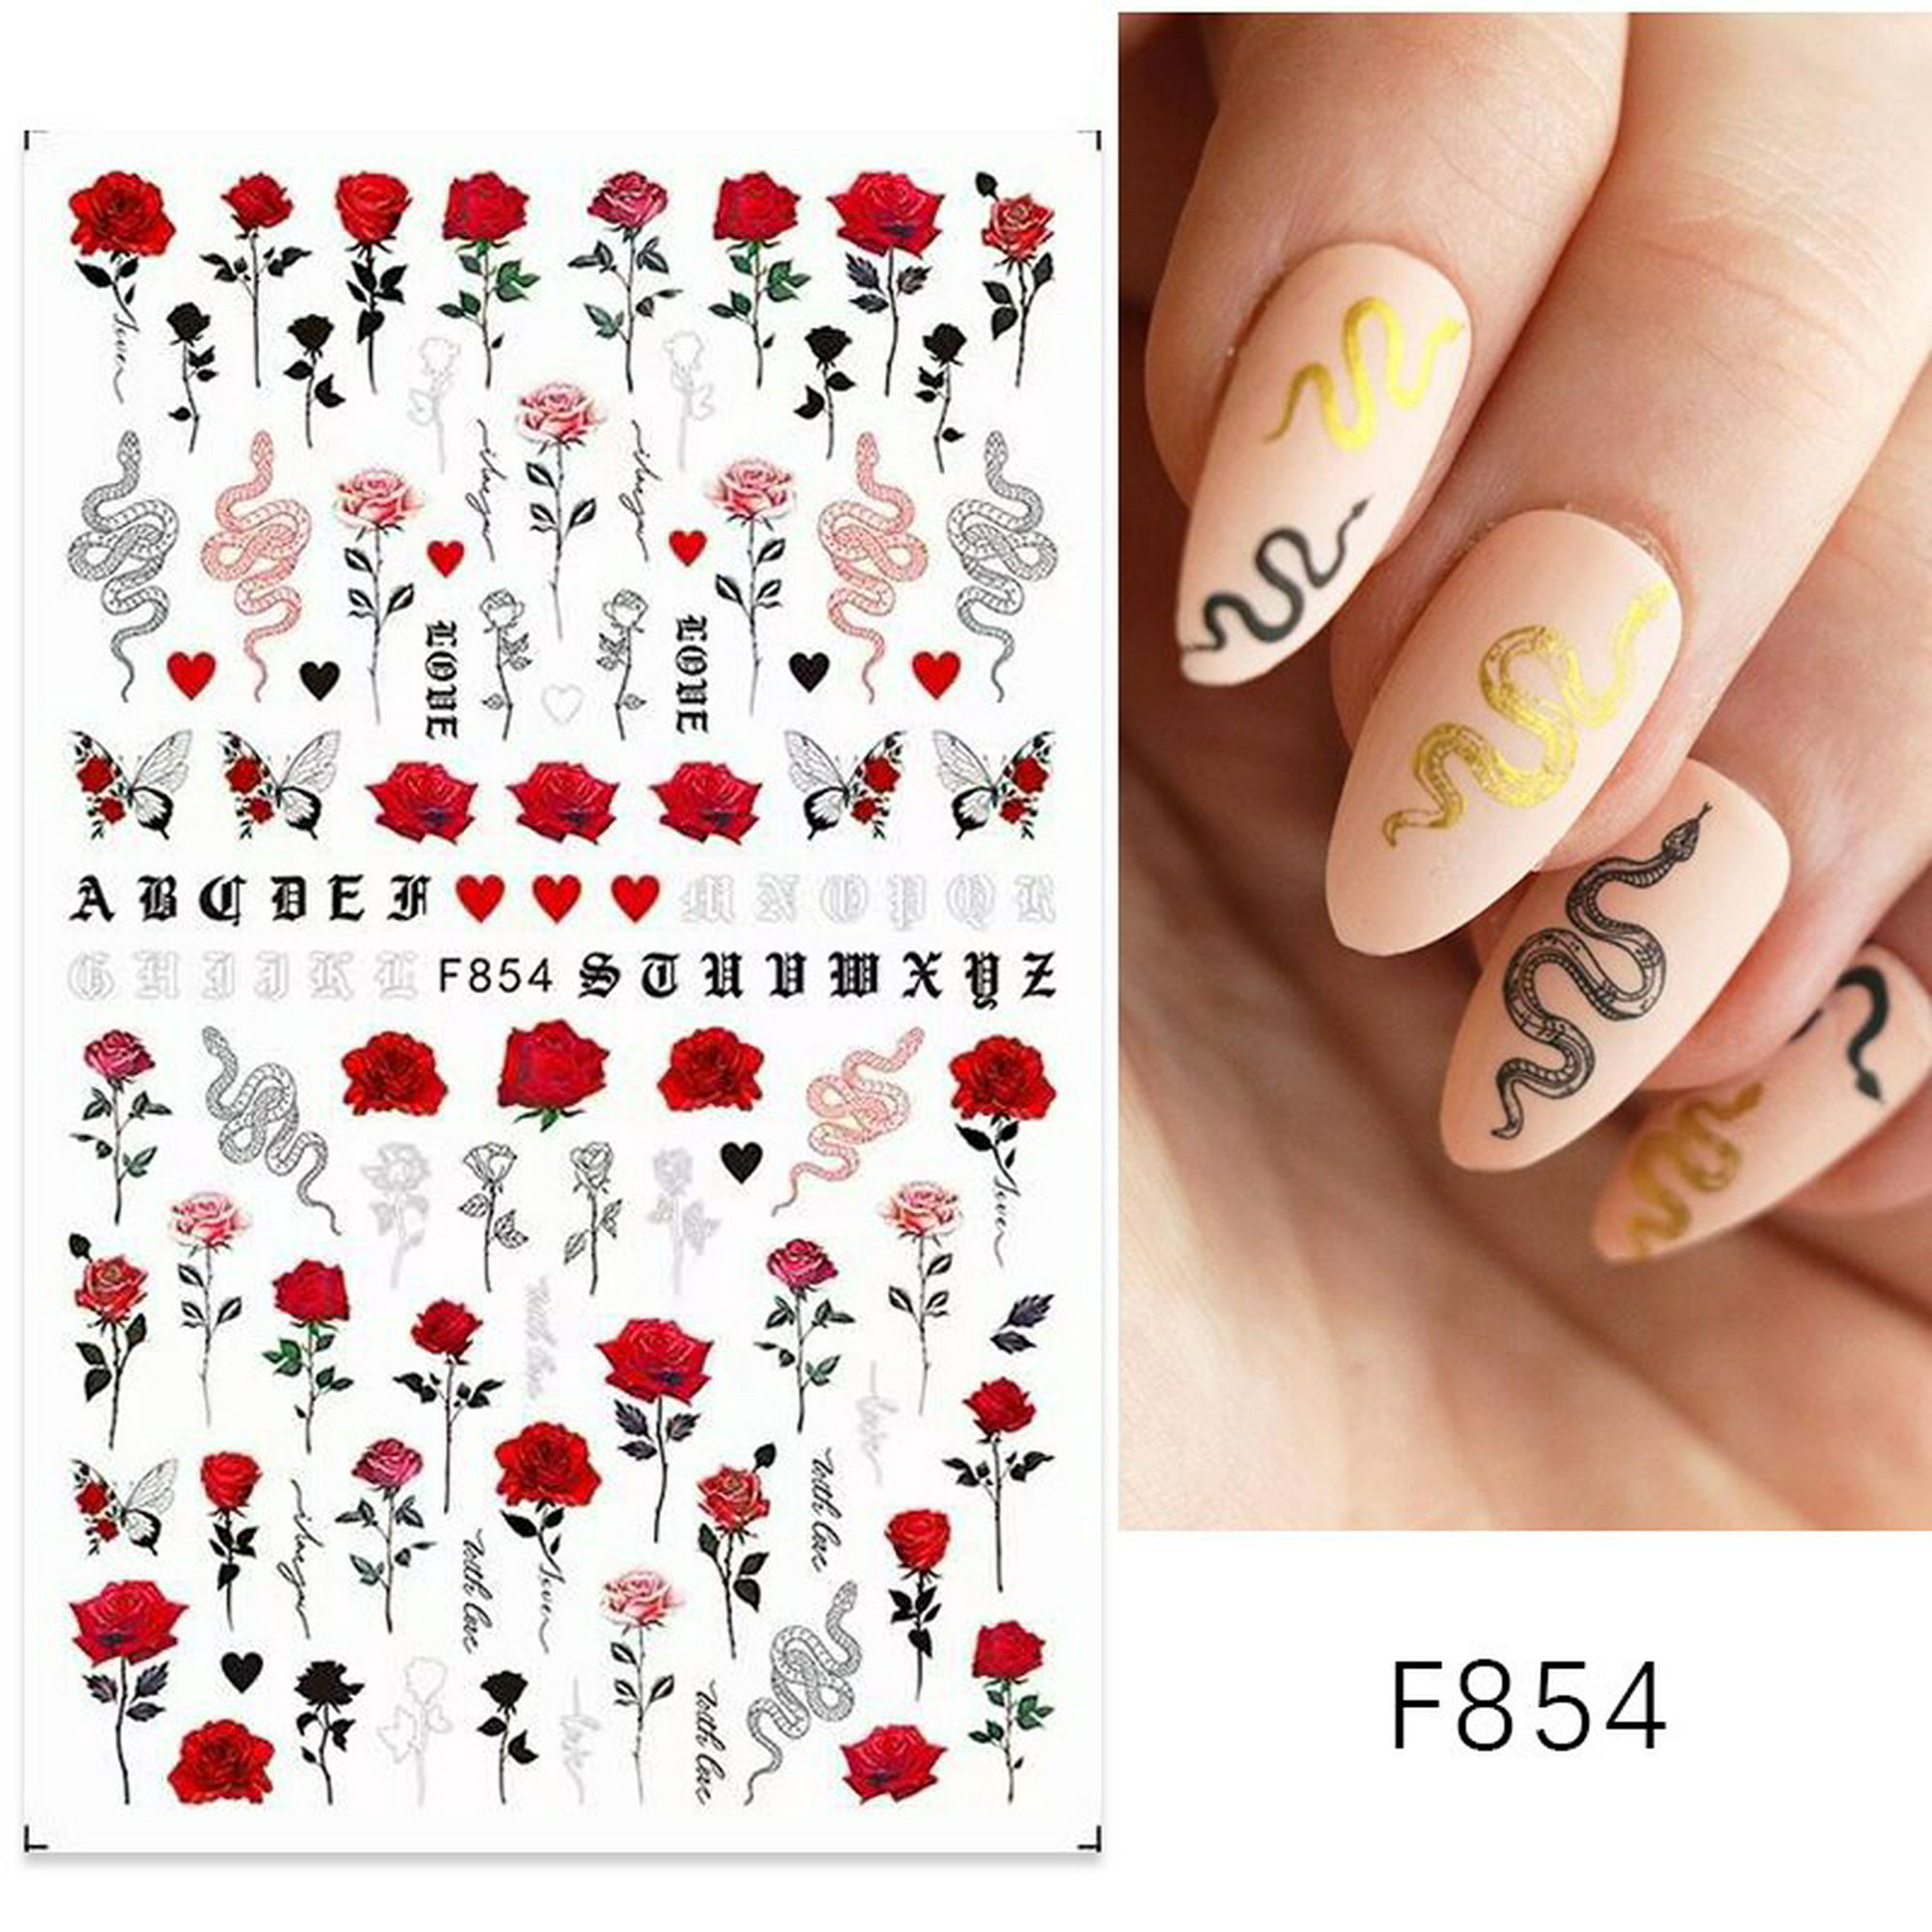 1 Uds. 3D láser corazón letra pegatina para uñas decoración de uñas flor  estrella accesorios para uñas calcomanías pegatinas suministros para uñas